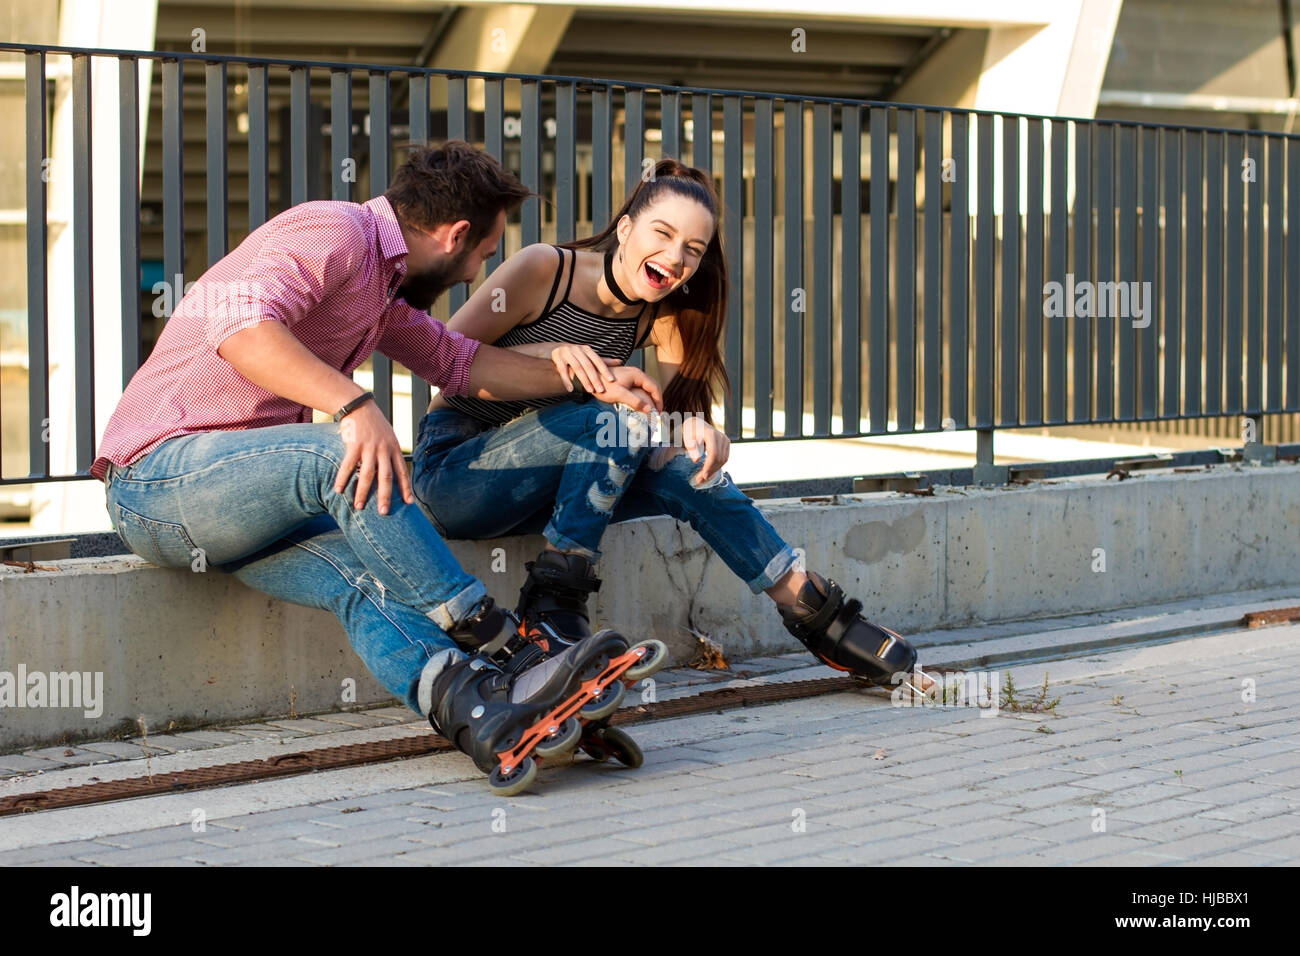 Zwei Personen auf Rollerblades sitzen. Stockfoto